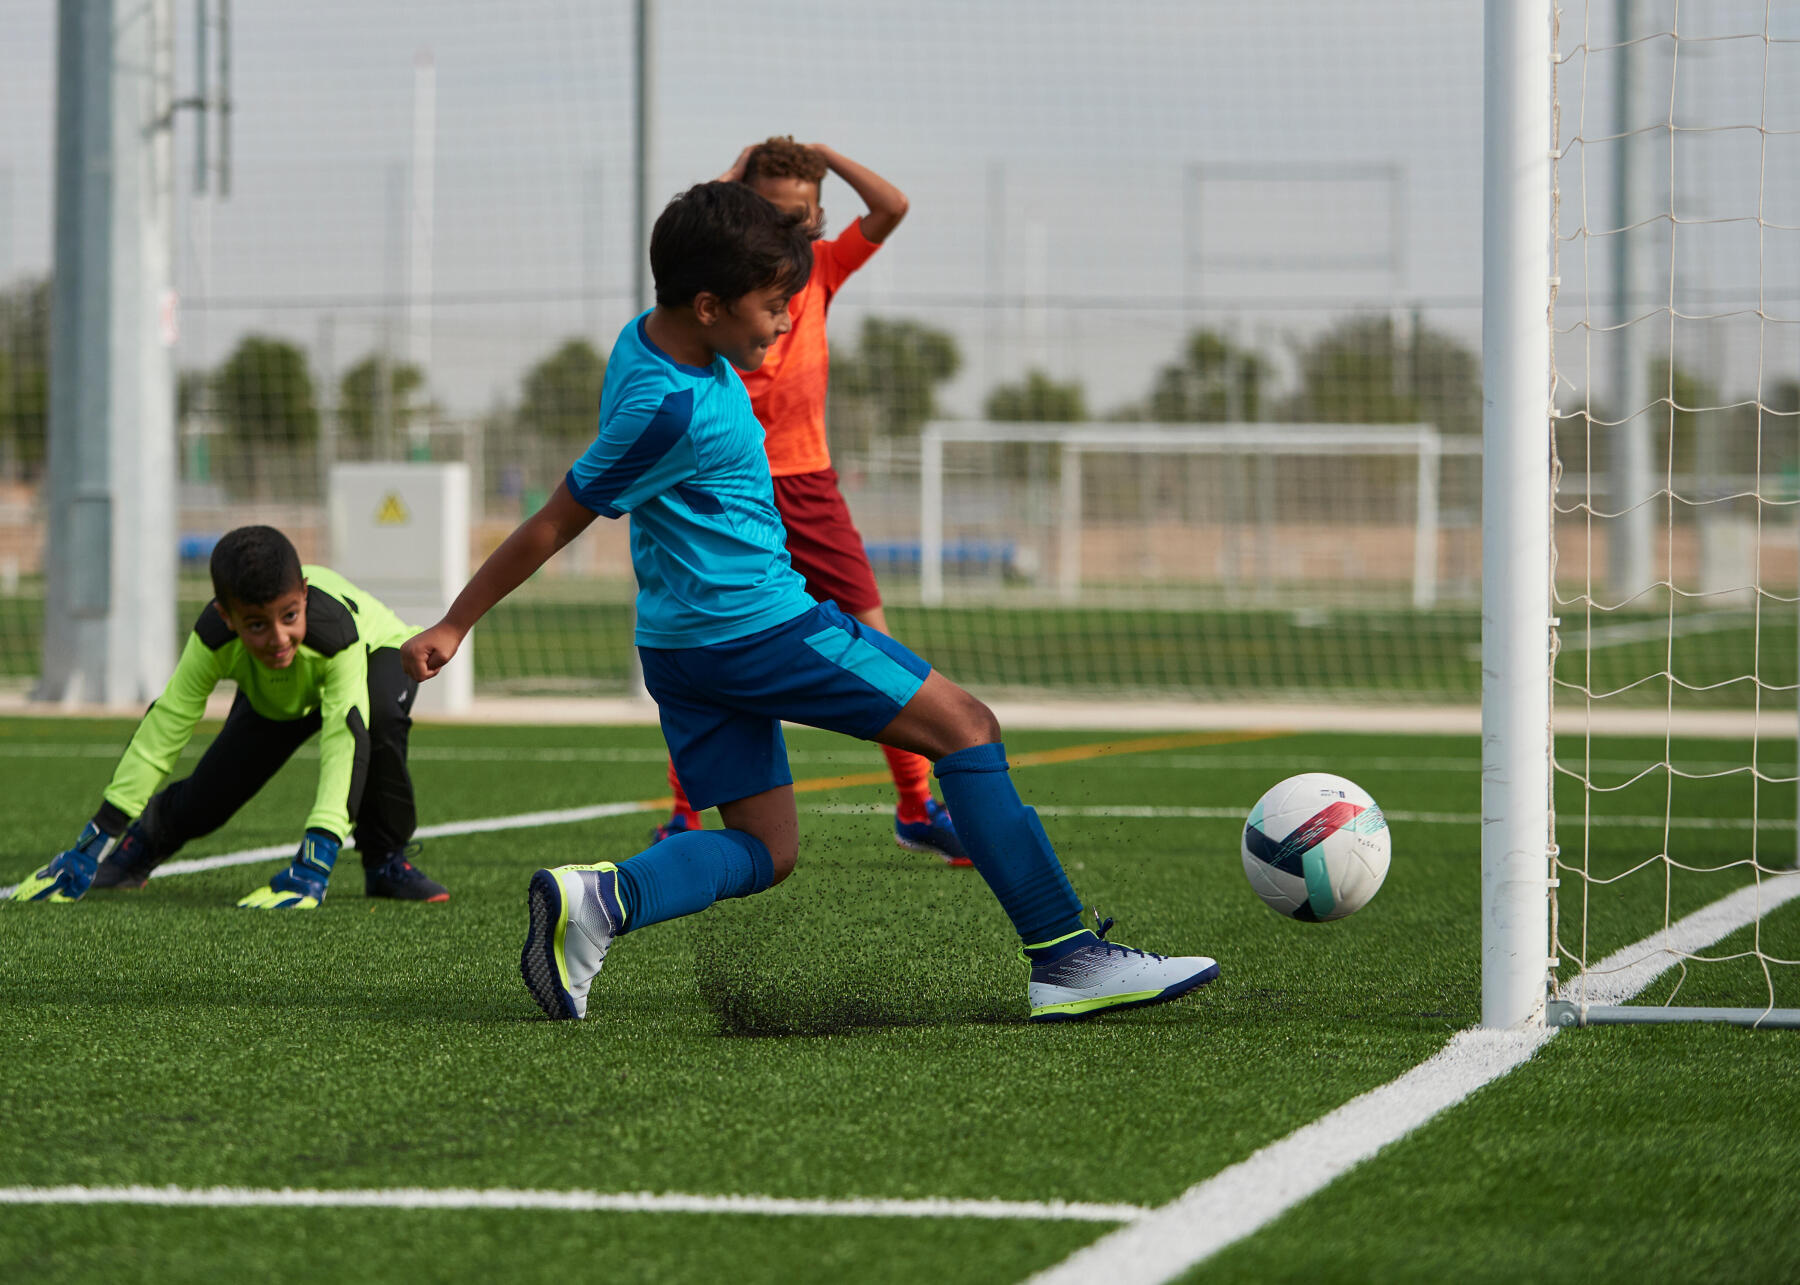 Football Enfant: Comment accompagner mon enfant dans sa progression